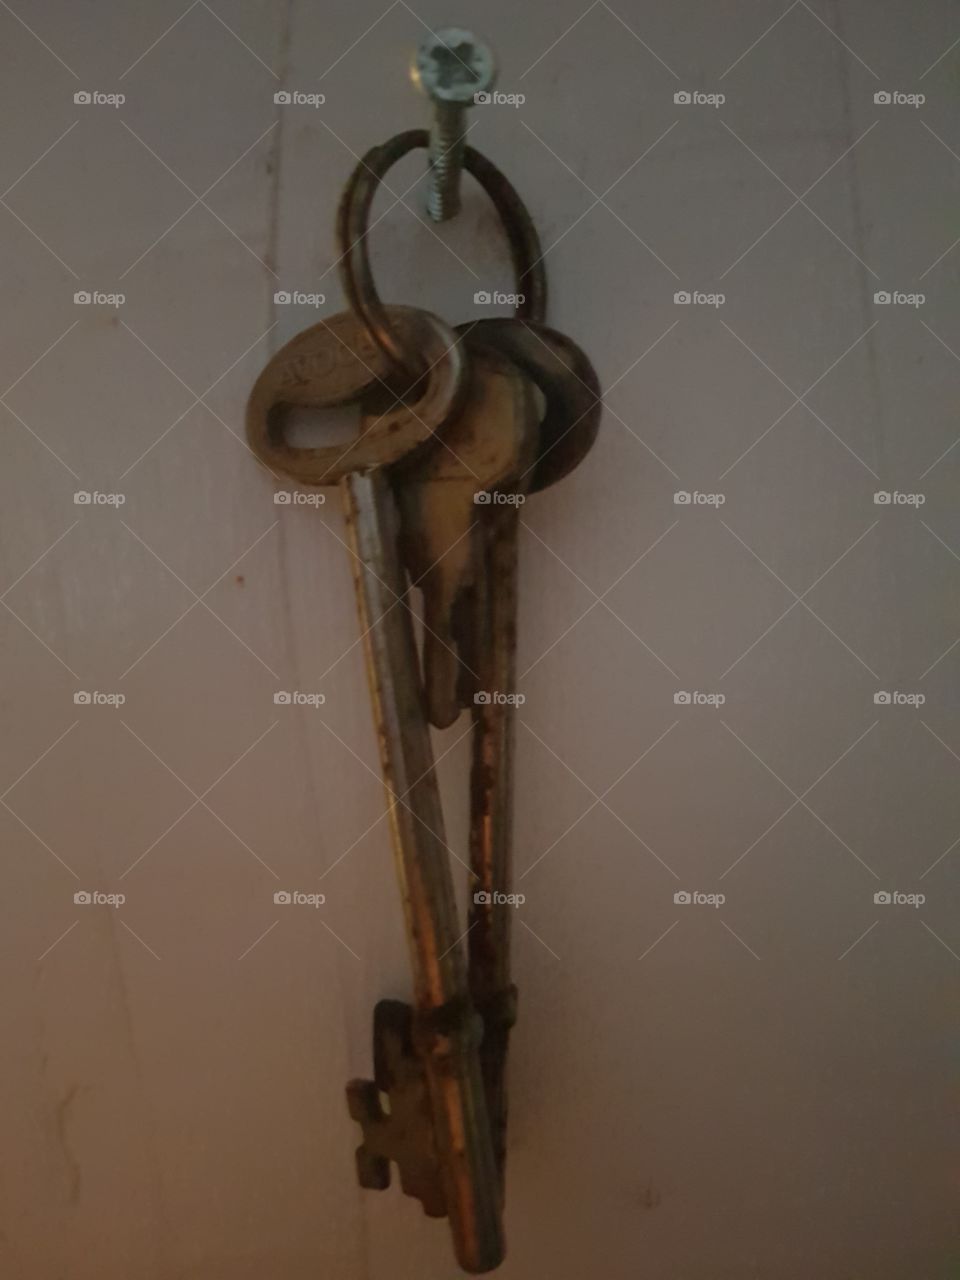 Old rusty keys